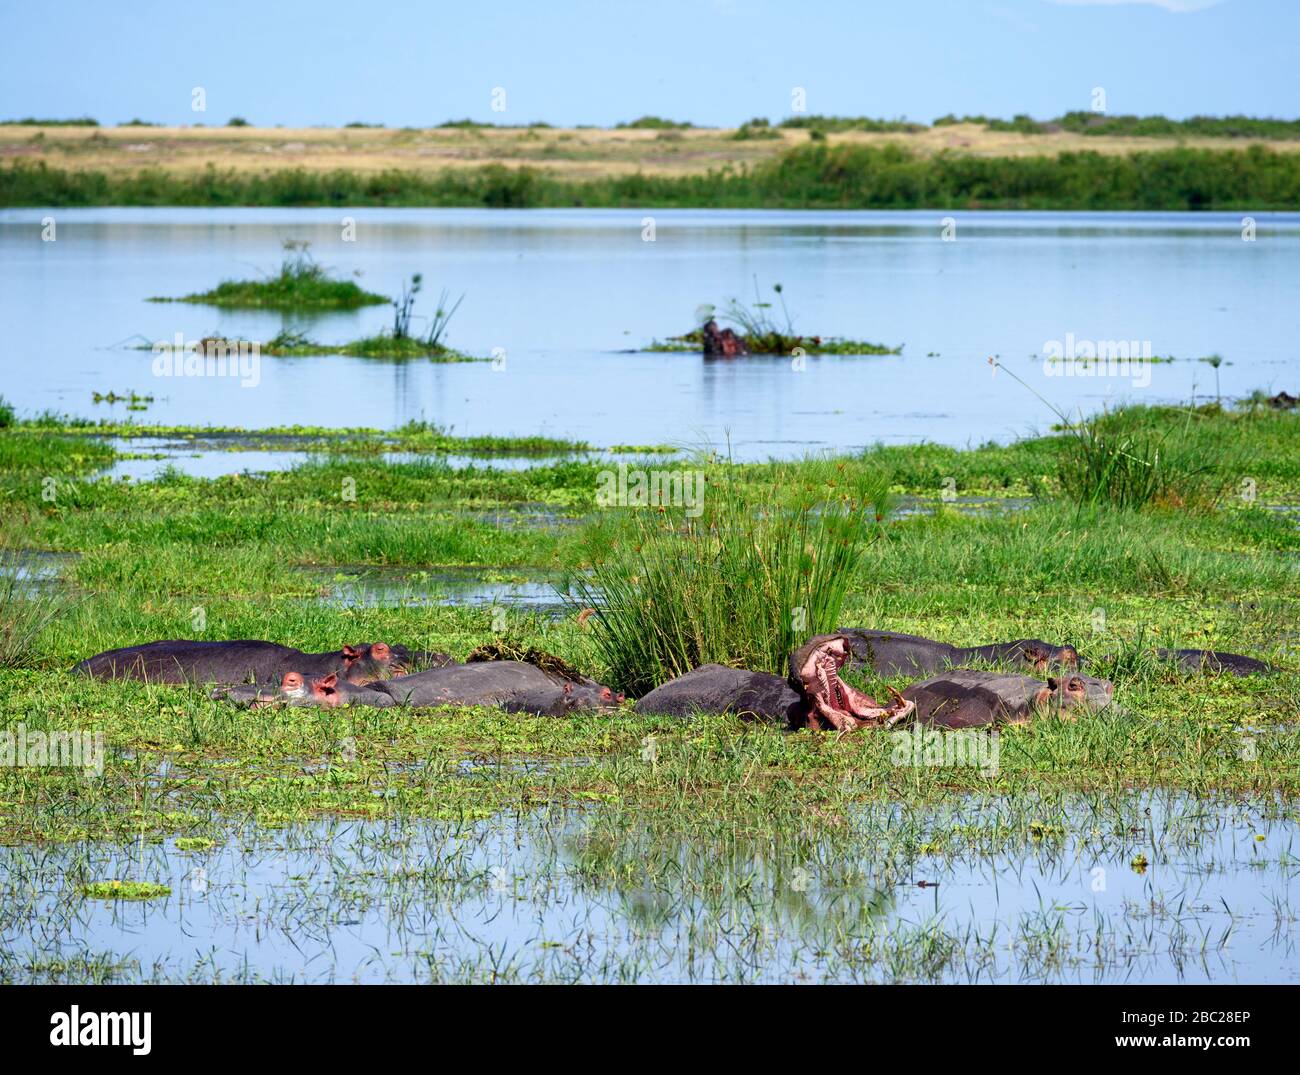 Hippopotamus commun (Hippopotamus amphibius). Groupe de hipos dans le parc national d'Amboseli, Kenya, Afrique Banque D'Images